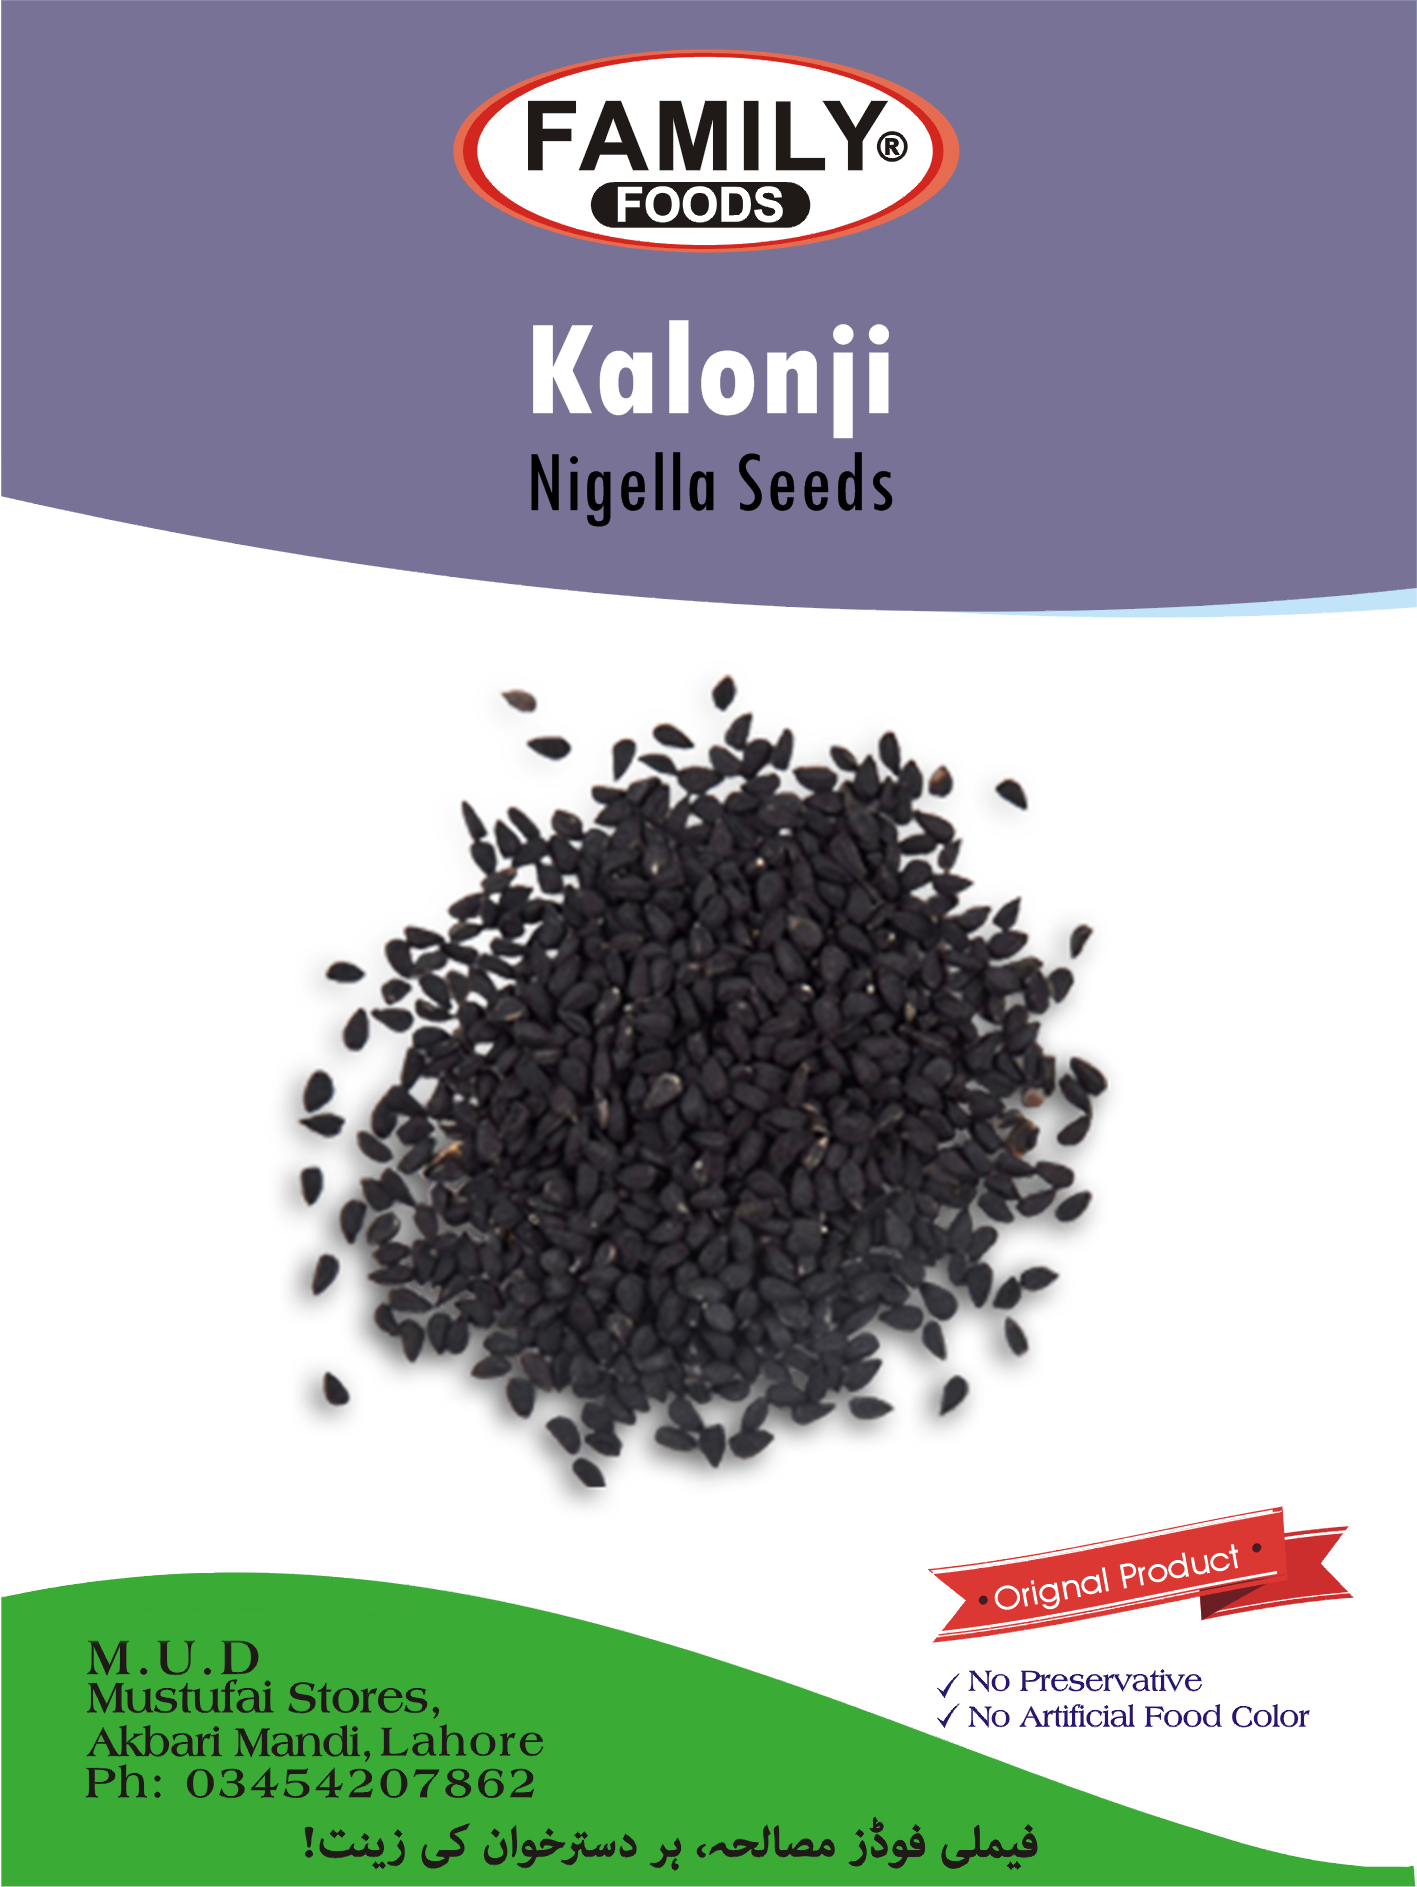 Kalonji (Nigella Seeds).